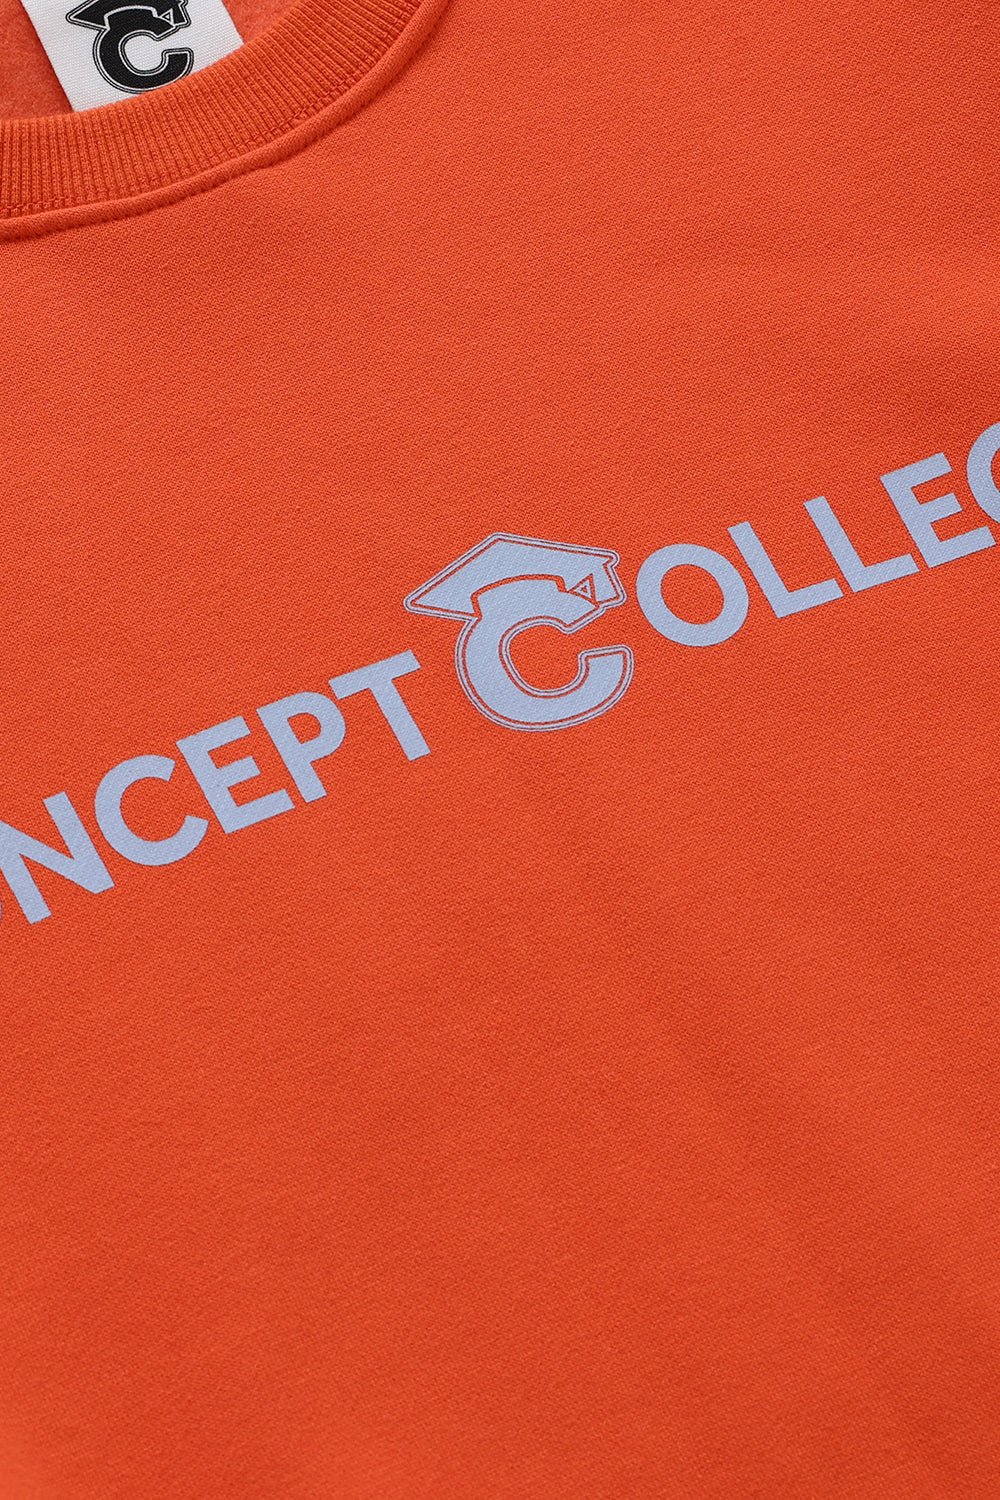 ベーシックラインロゴスウェットシャツ・オレンジ［ユニセックス］/ Basic Line Logo Unisex Orange Sweat Shirt